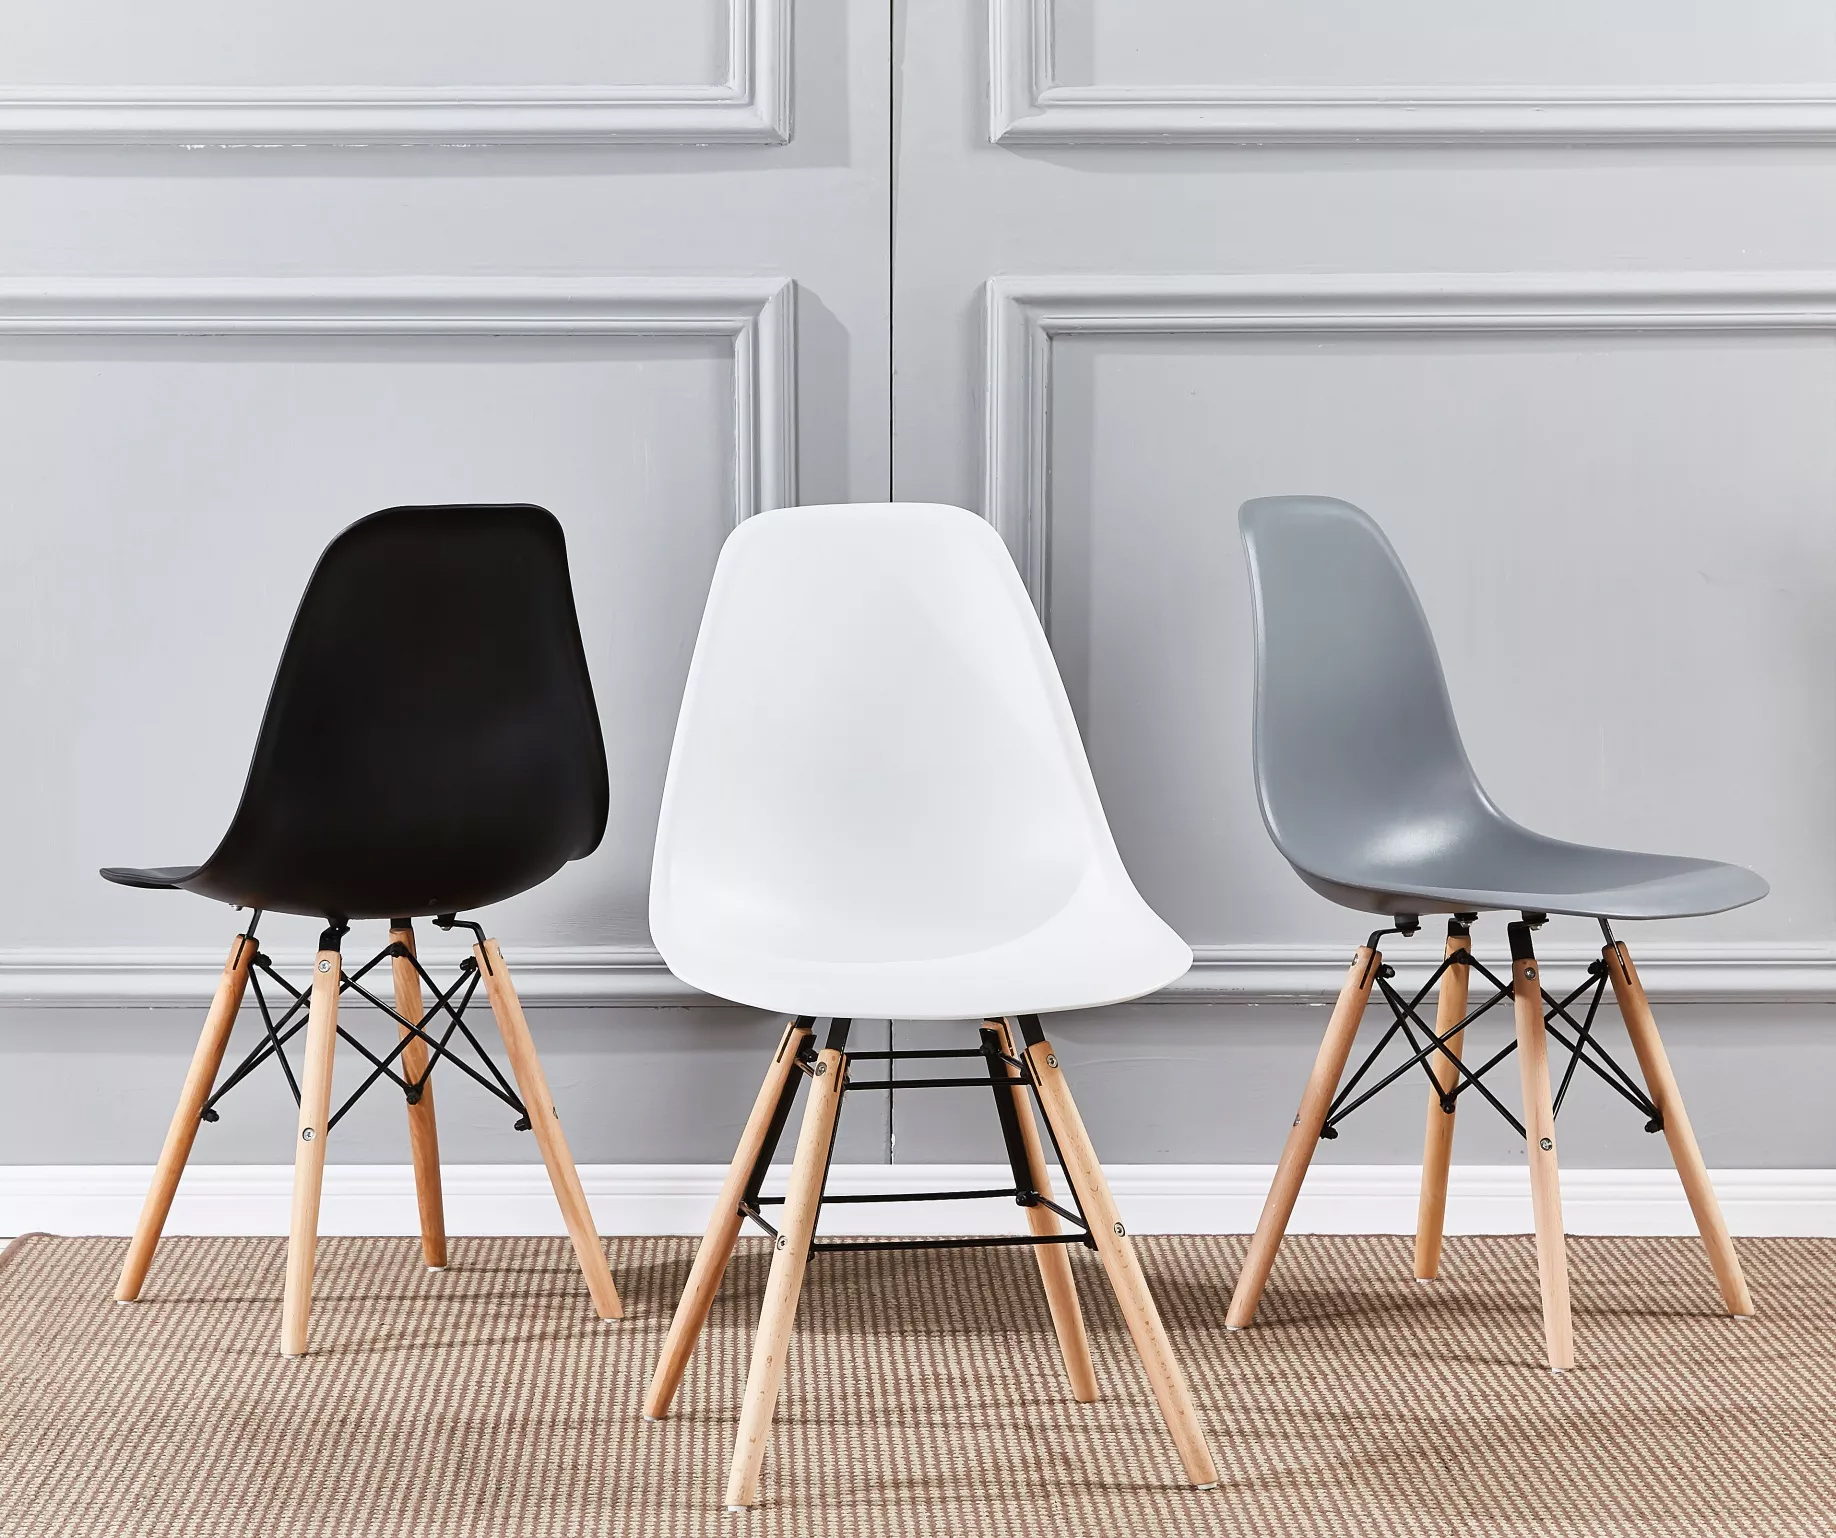 Ønsker du å kjøpe en stol, hvilket materiale anbefaler du?